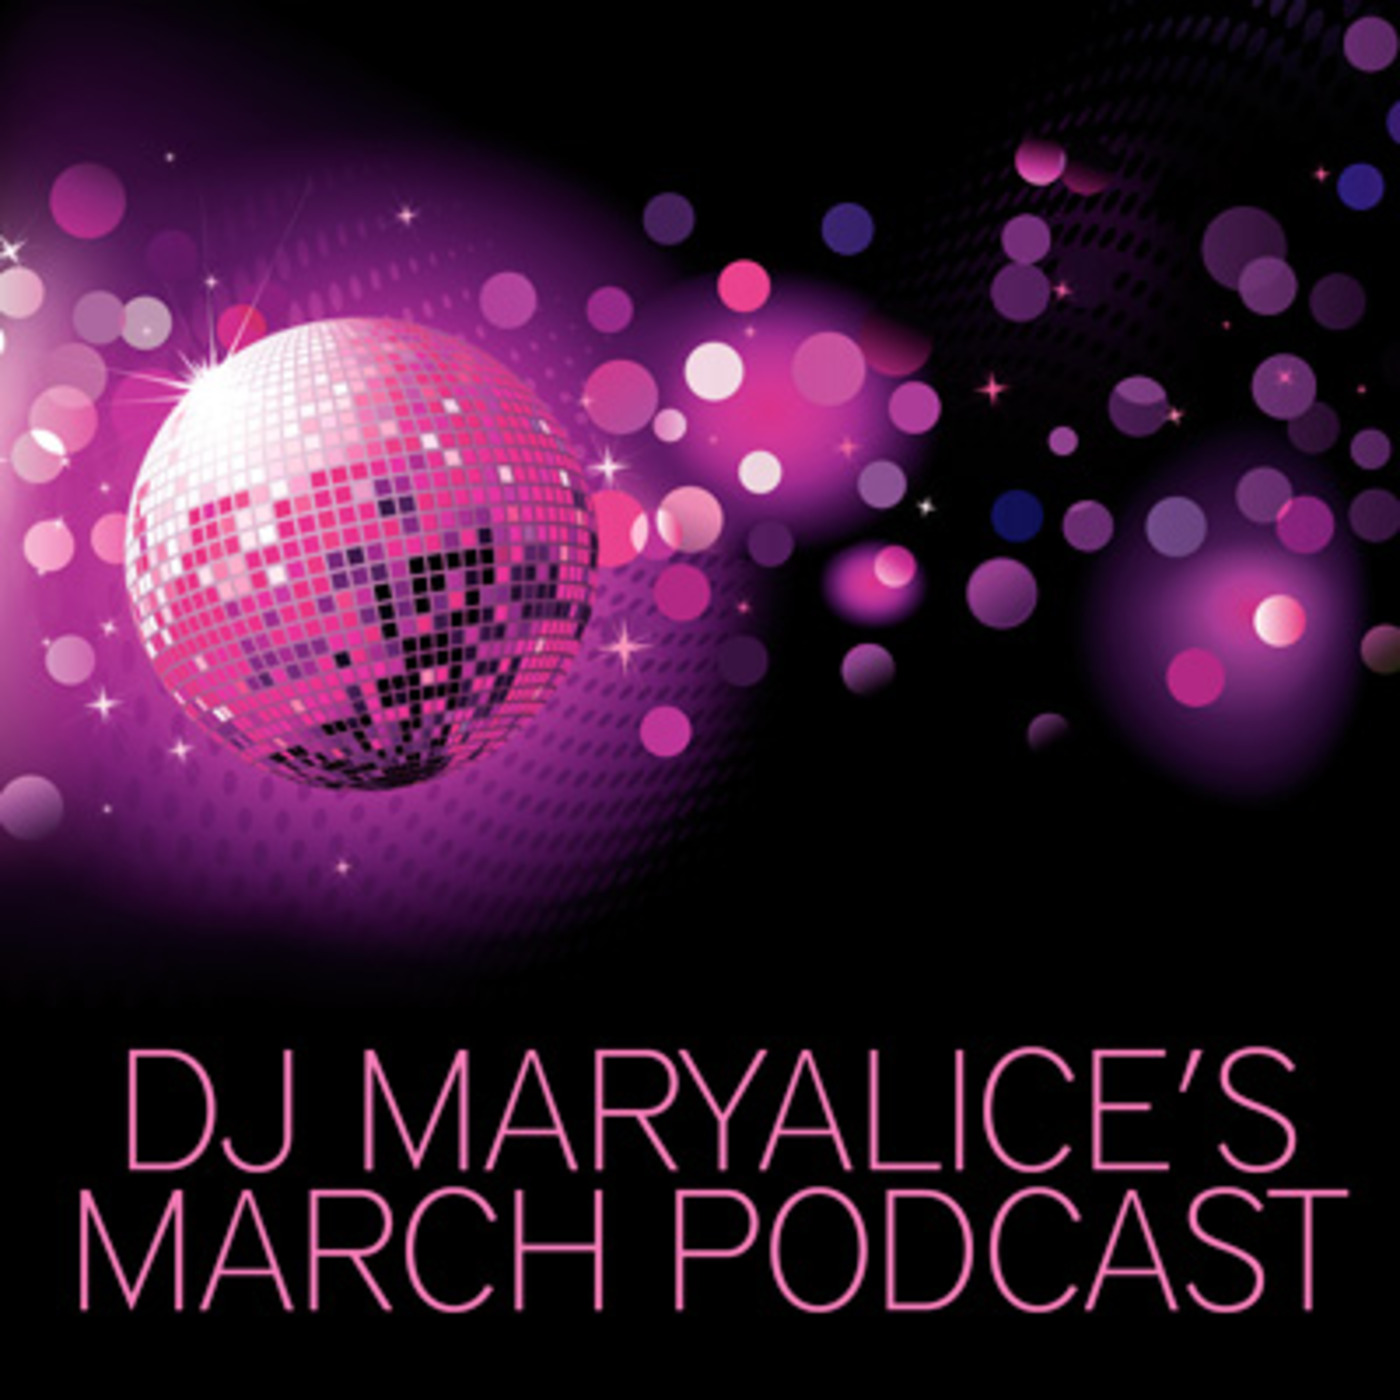 DJ Maryalice's March Podcast